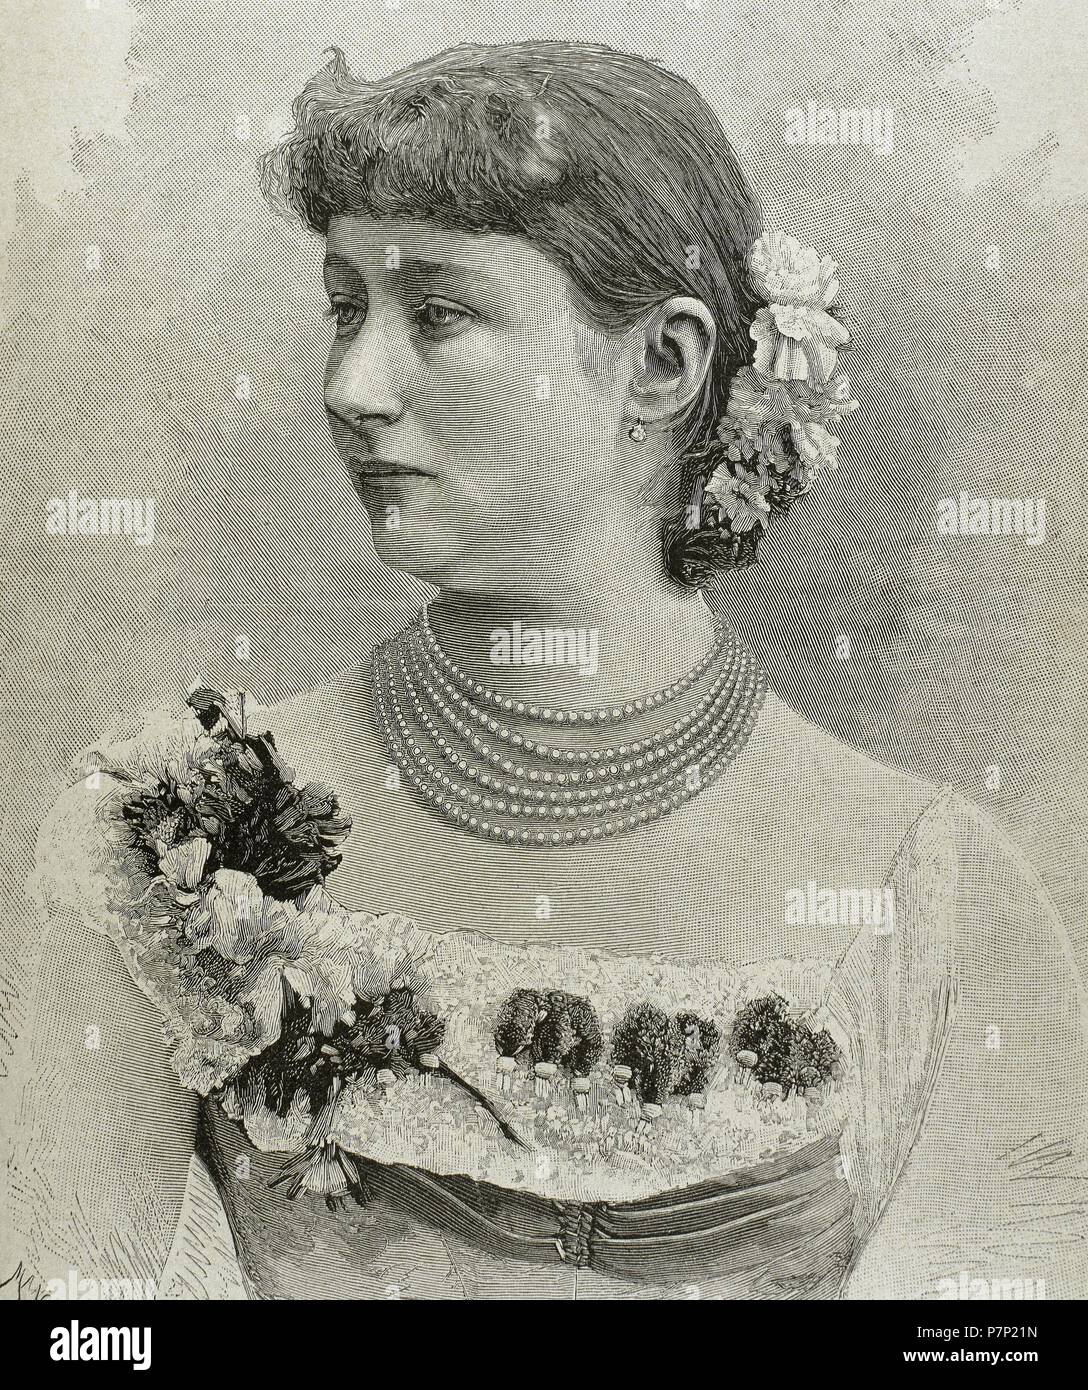 Augusta Victoria de Schleswig-Holstein (1858-1921). La última emperatriz alemán y Reina de Prusia como la primera esposa del emperador alemán Guillermo II (1859-1941). Retrato. Grabado por Mancastropa. Foto de stock